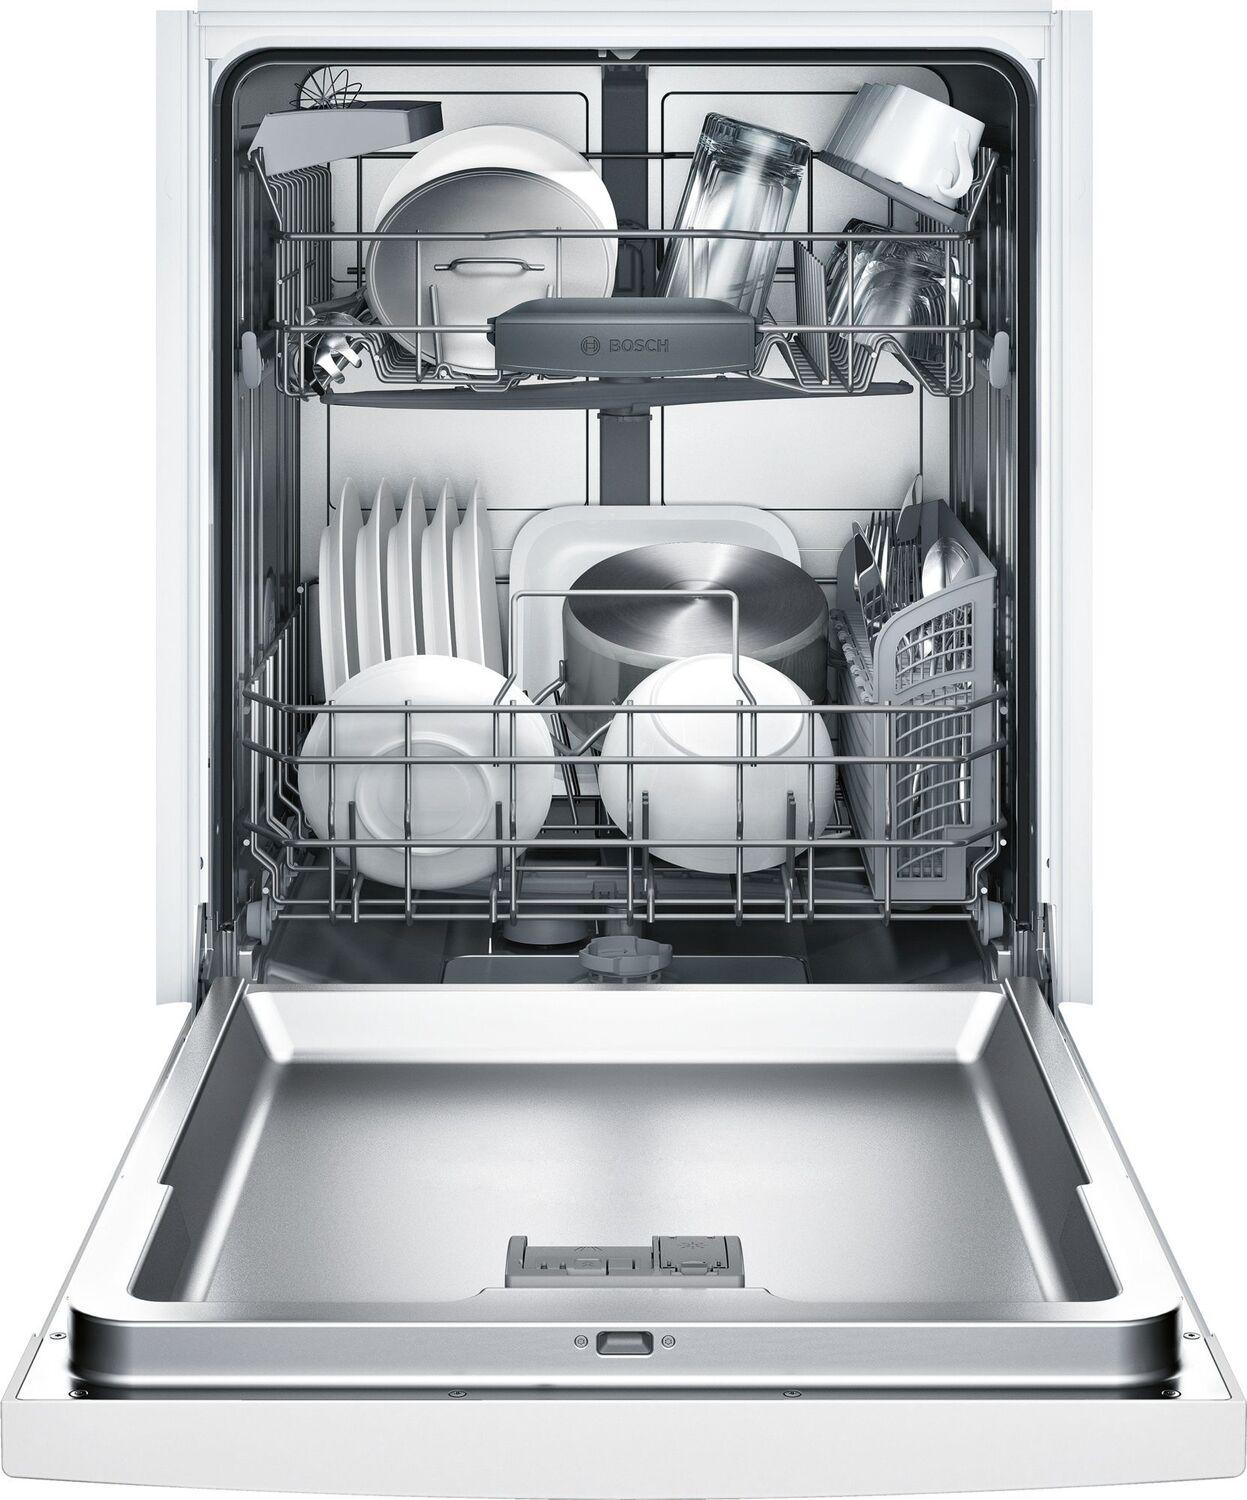 100 Series Dishwasher 24" White